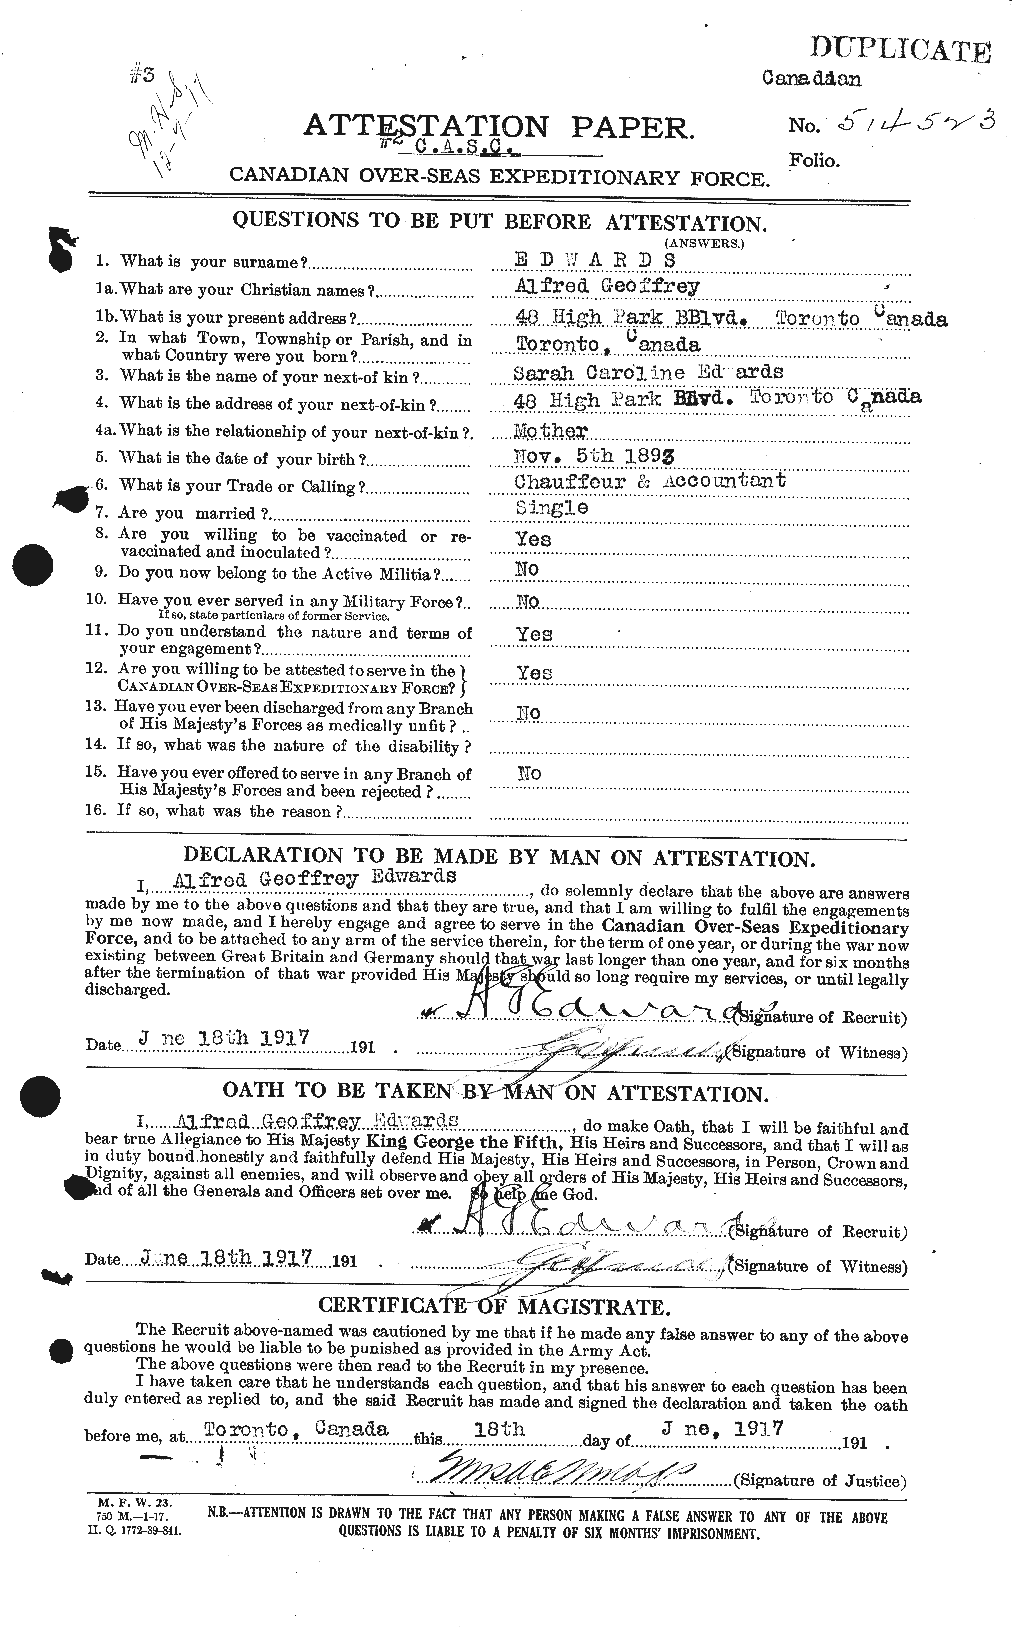 Dossiers du Personnel de la Première Guerre mondiale - CEC 313103a